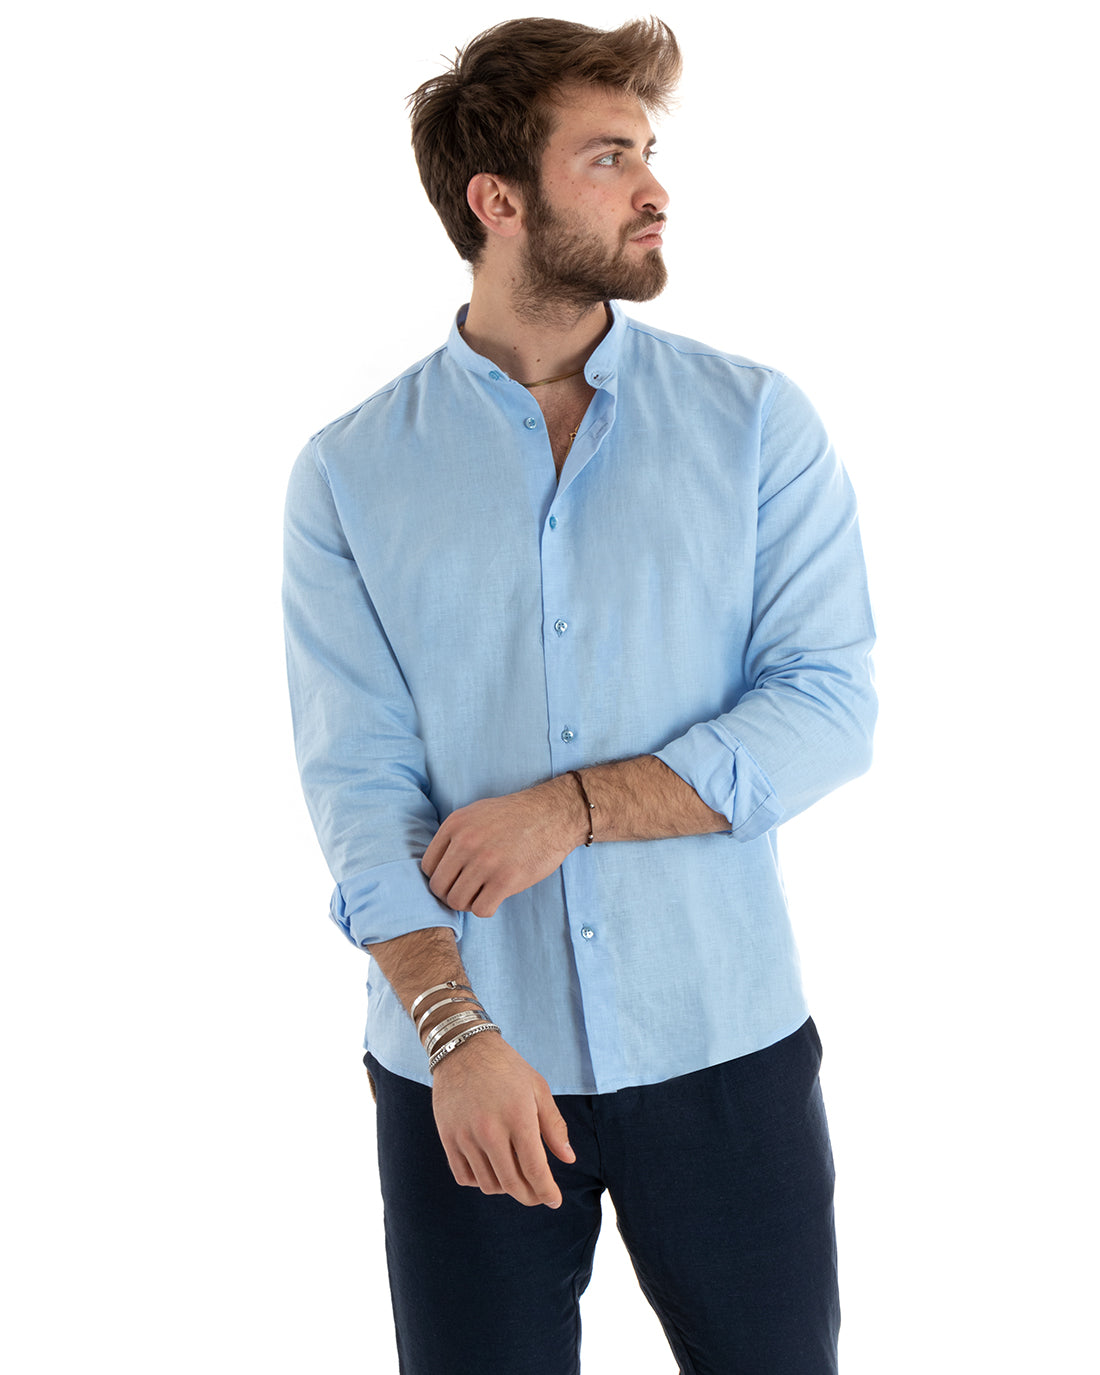 Men's Mandarin Collar Shirt Long Sleeve Linen Solid Color Tailored Light Blue GIOSAL-C2670A